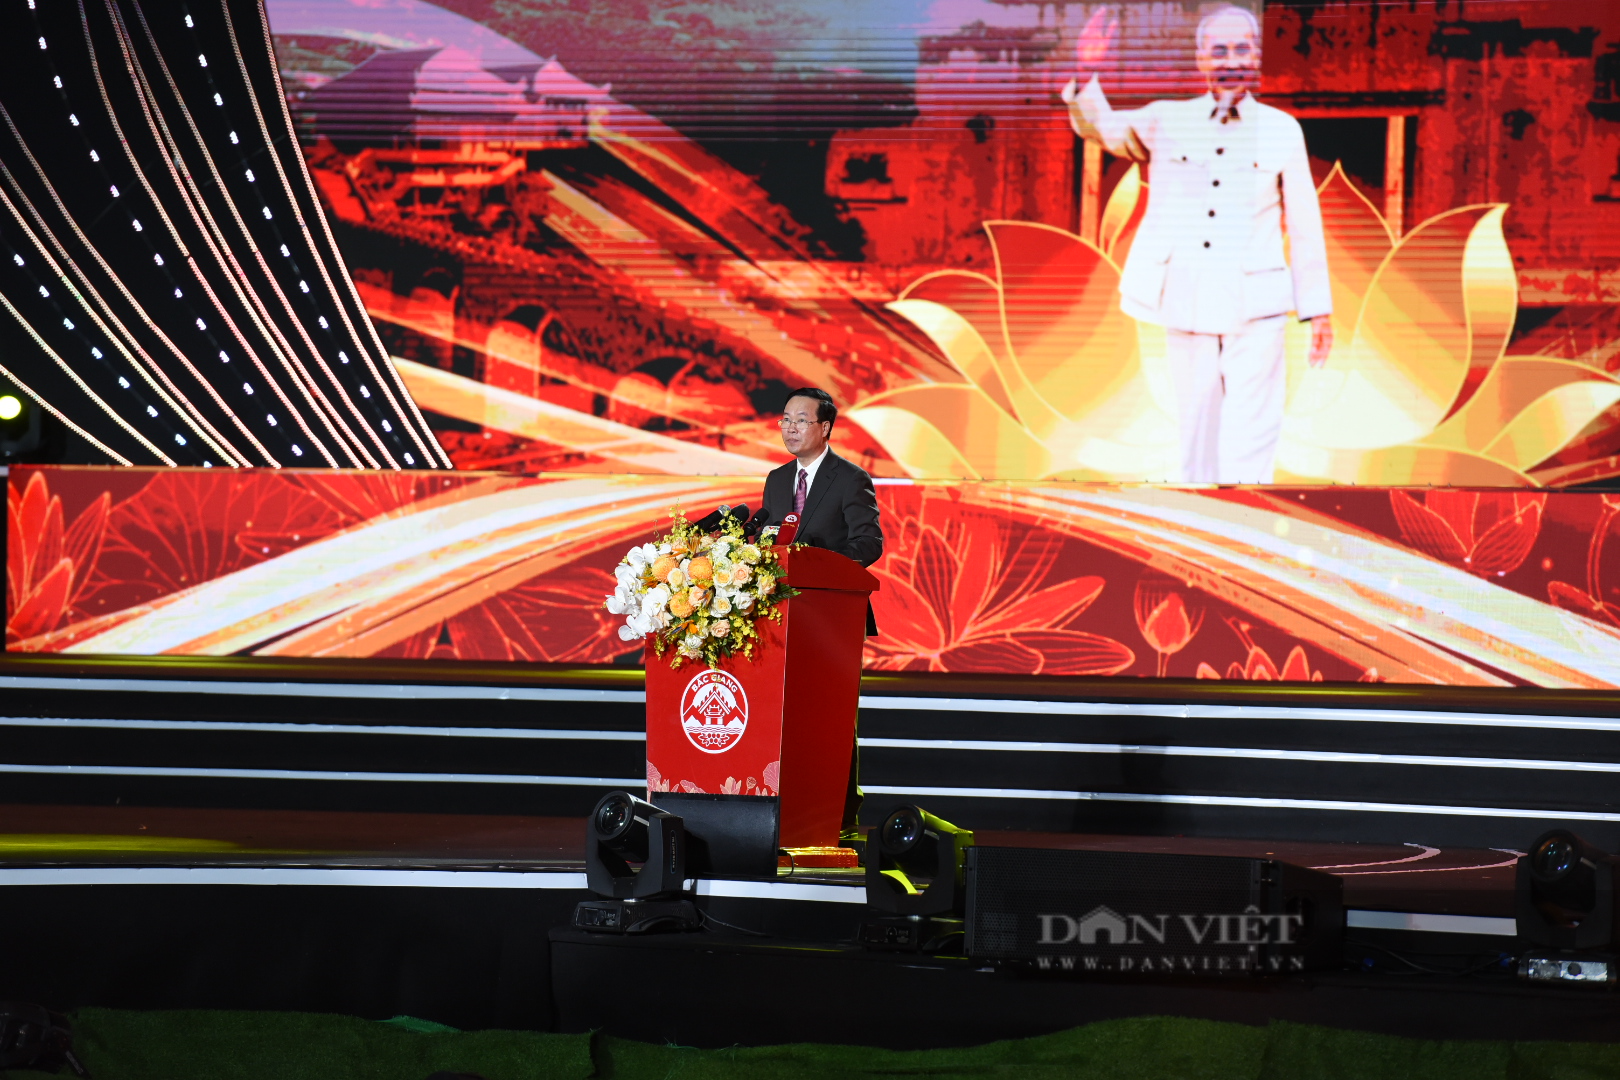 Chủ tịch nước Võ Văn Thưởng: Bắc Giang đang dần trở thành một trung tâm công nghiệp lớn của cả nước - Ảnh 4.